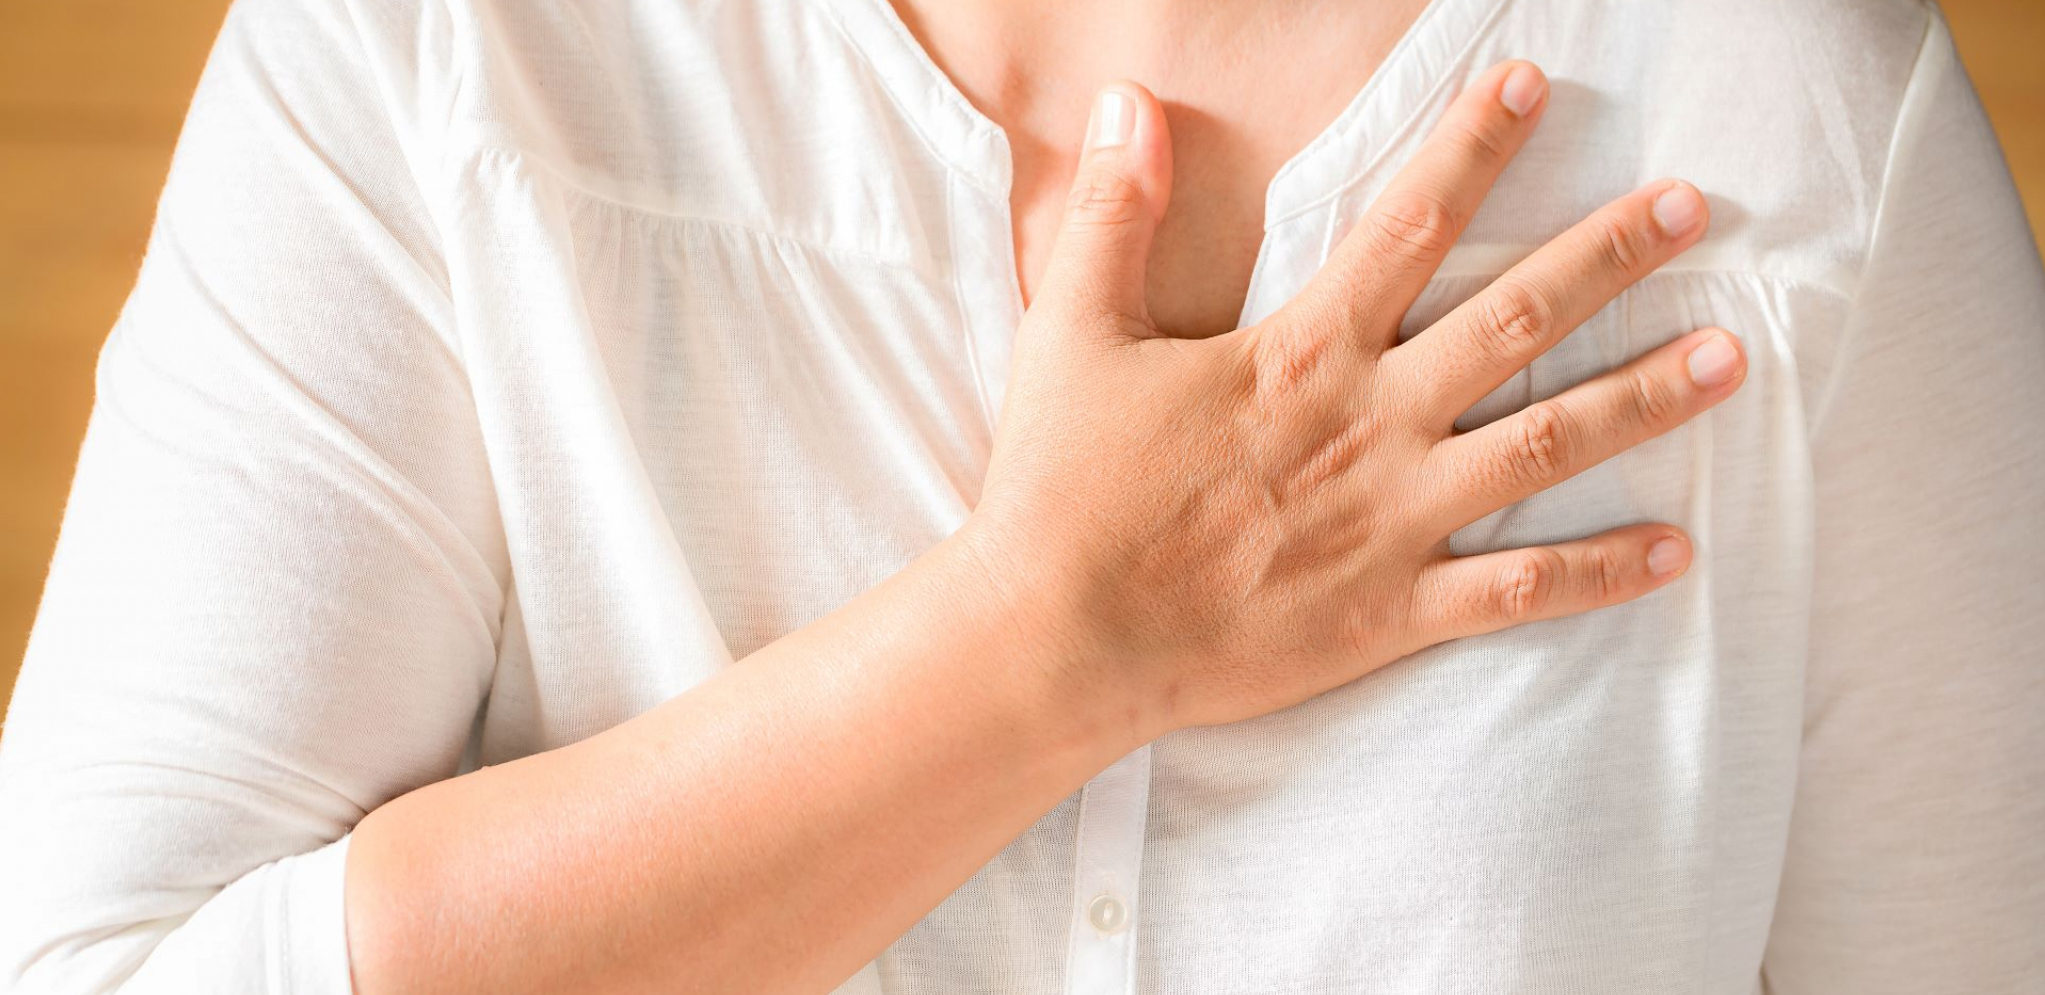 Dobro obratite pažnju! Simptomi srčanog udara mogu da budu slični gripu!